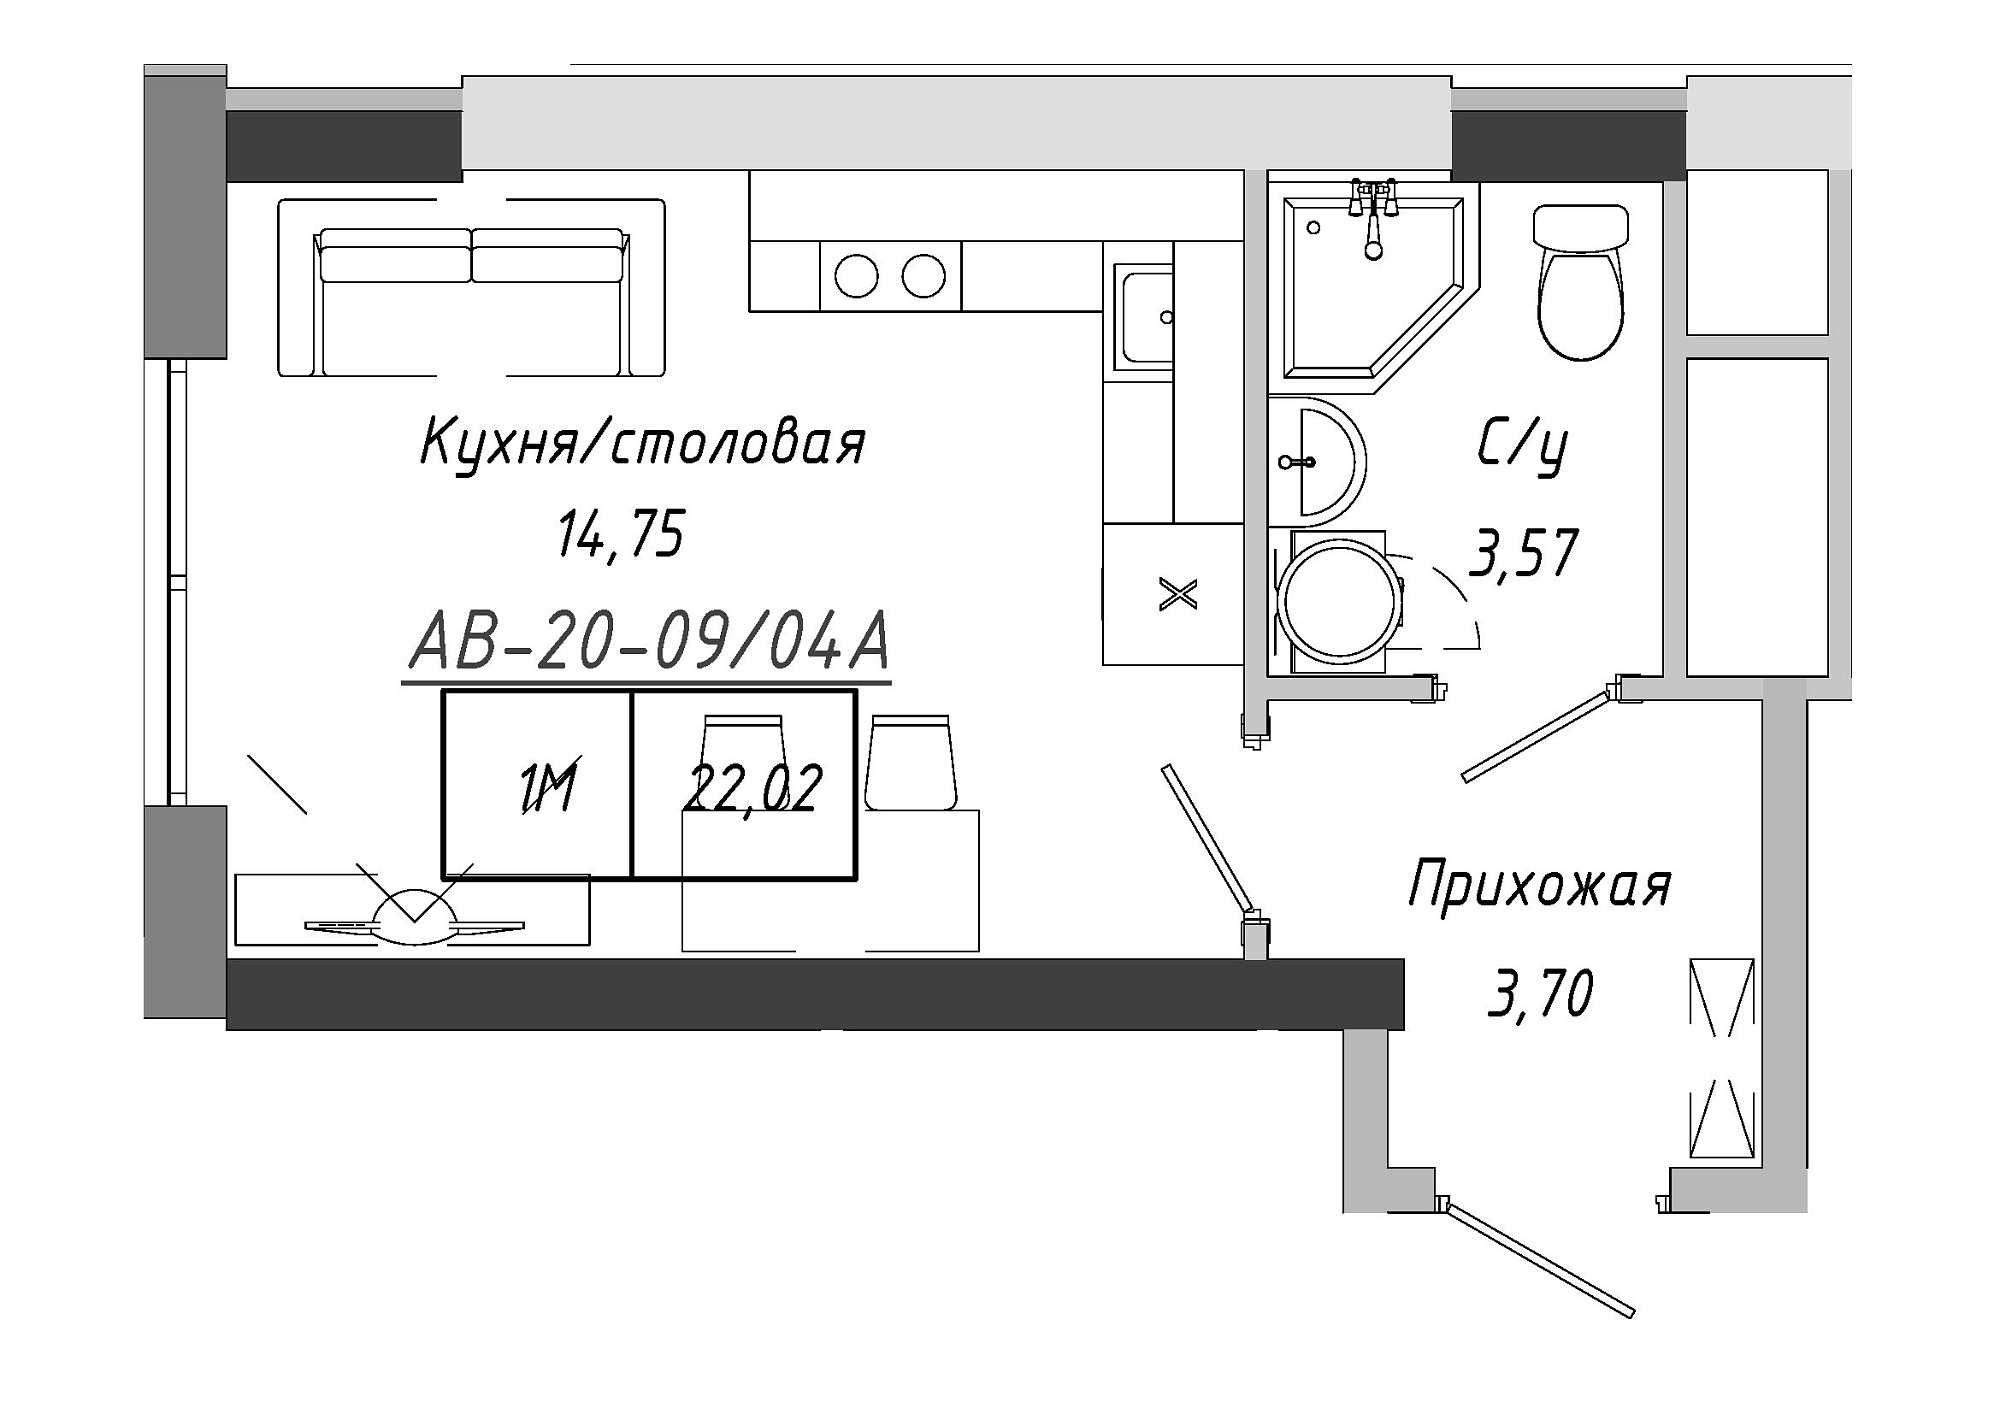 Планировка Smart-квартира площей 21.3м2, AB-20-09/0004а.